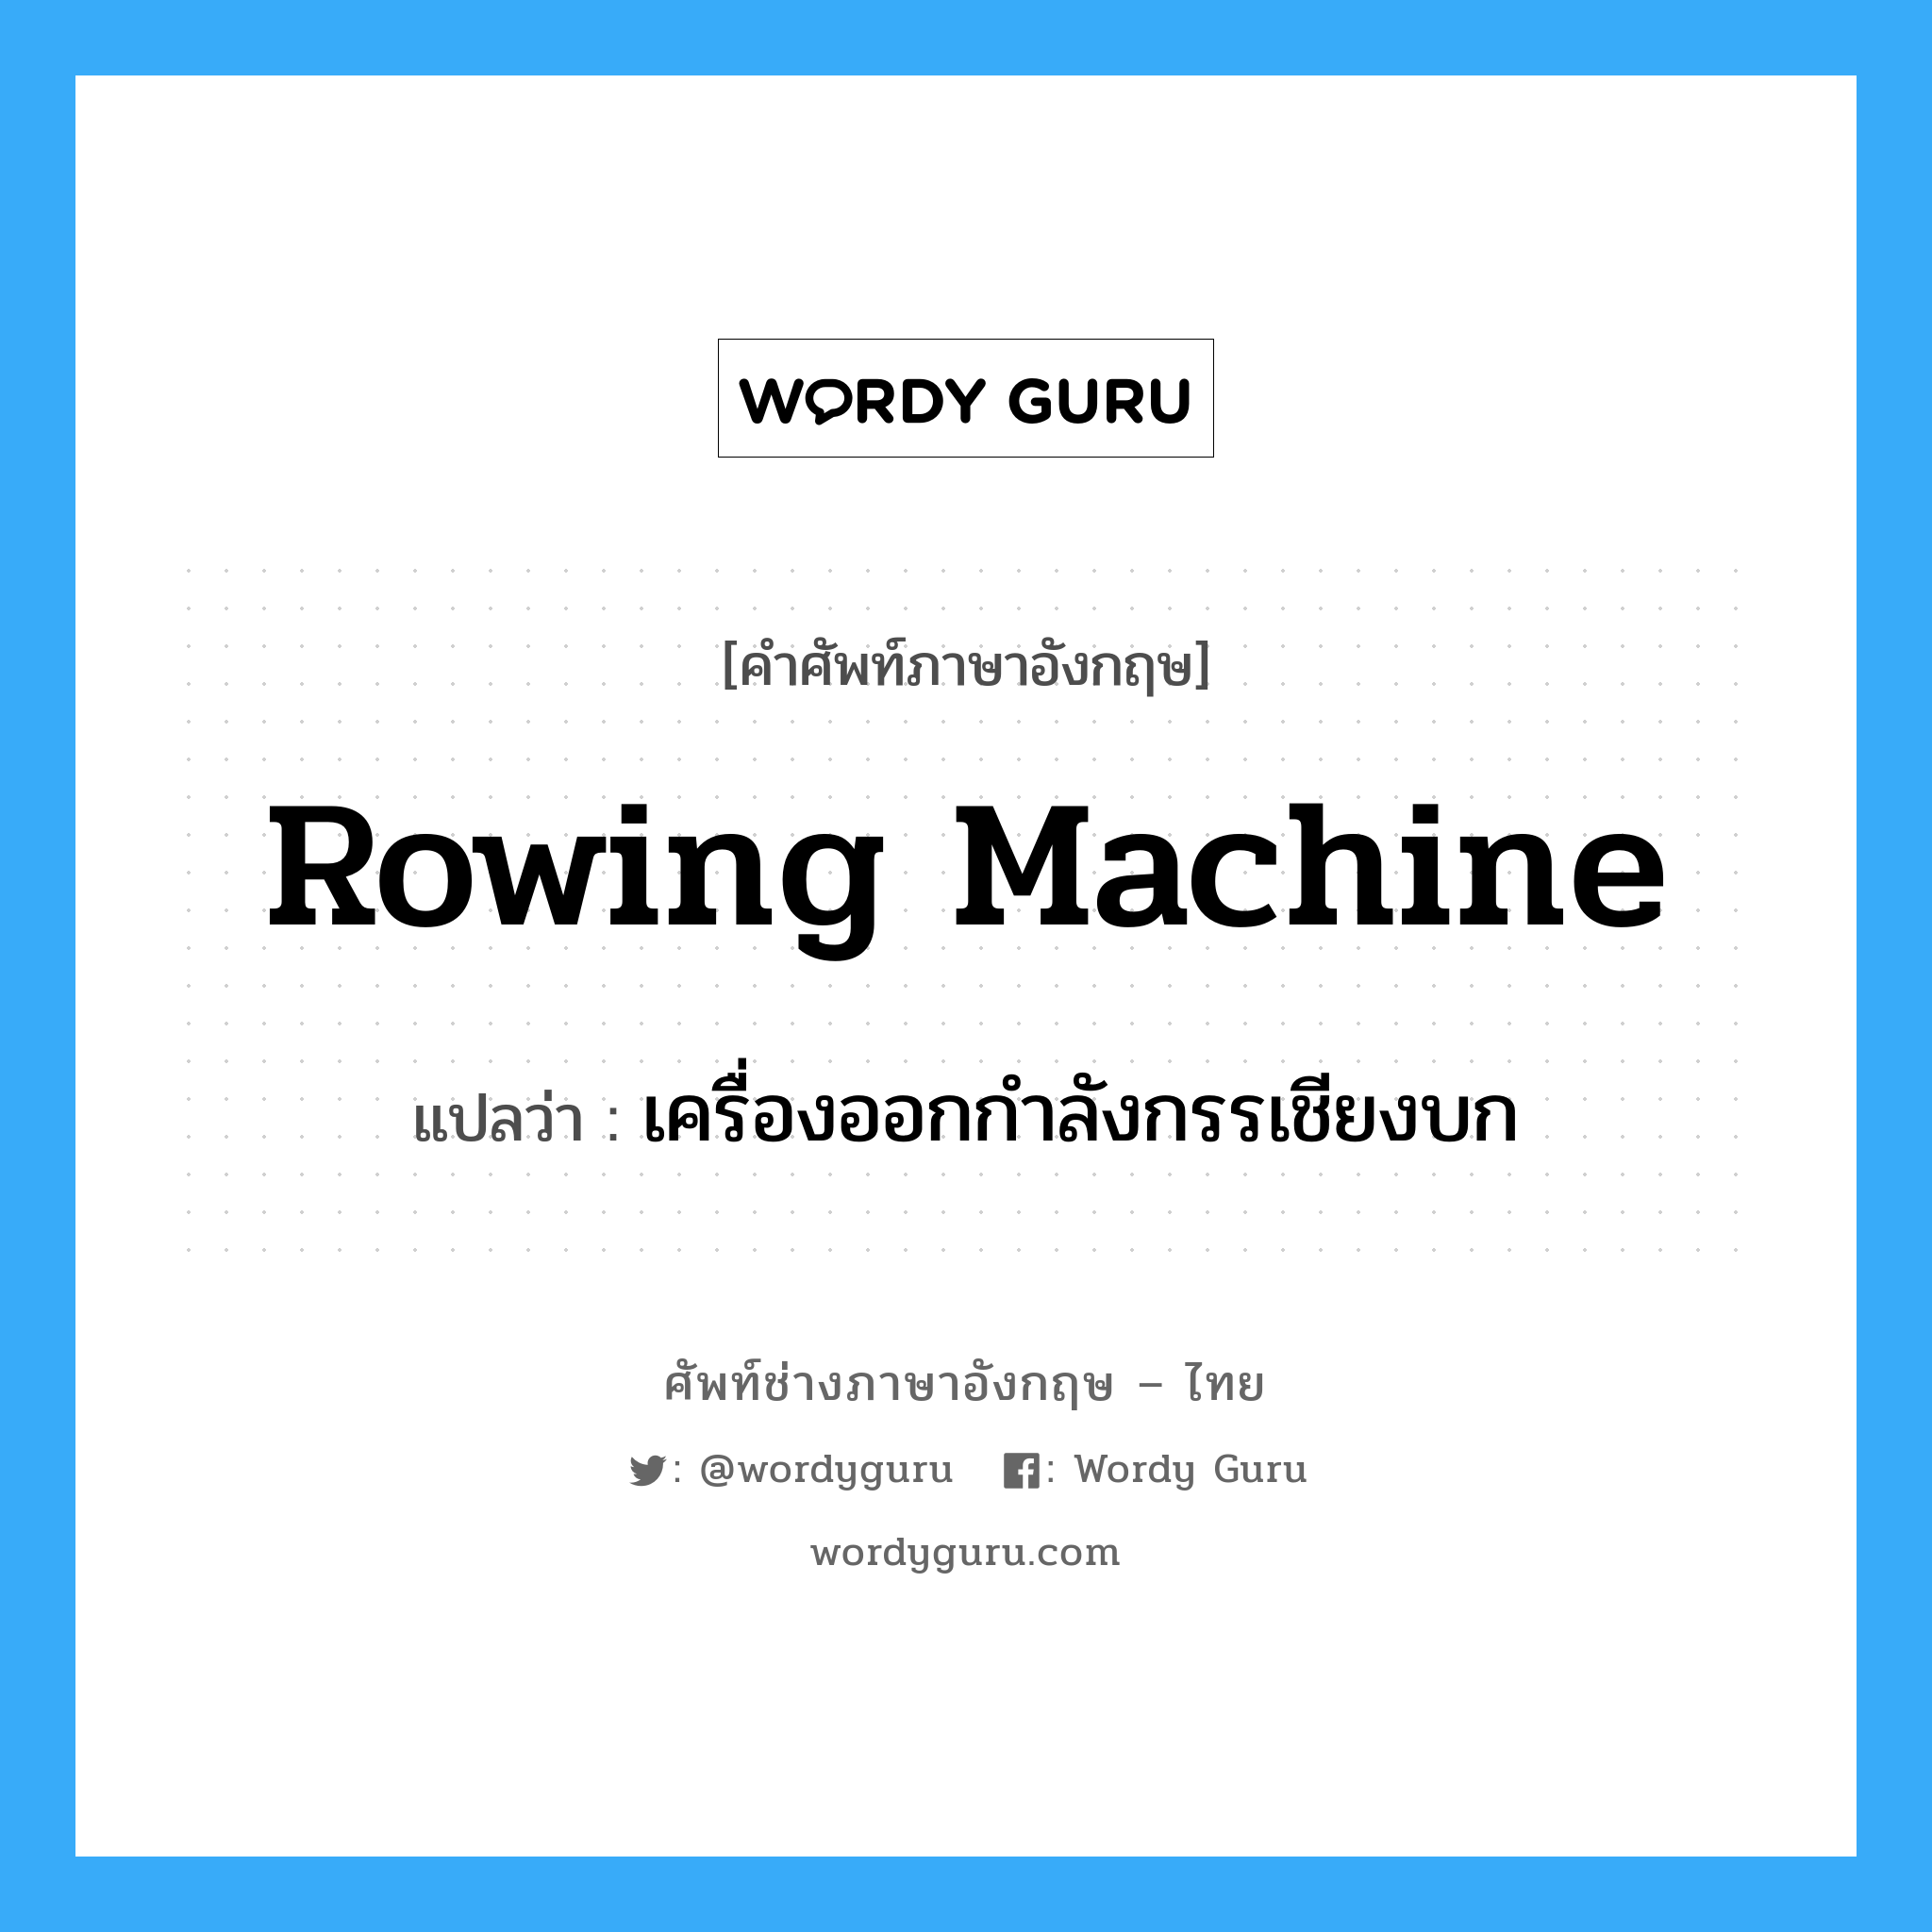 rowing machine แปลว่า?, คำศัพท์ช่างภาษาอังกฤษ - ไทย rowing machine คำศัพท์ภาษาอังกฤษ rowing machine แปลว่า เครื่องออกกำลังกรรเชียงบก